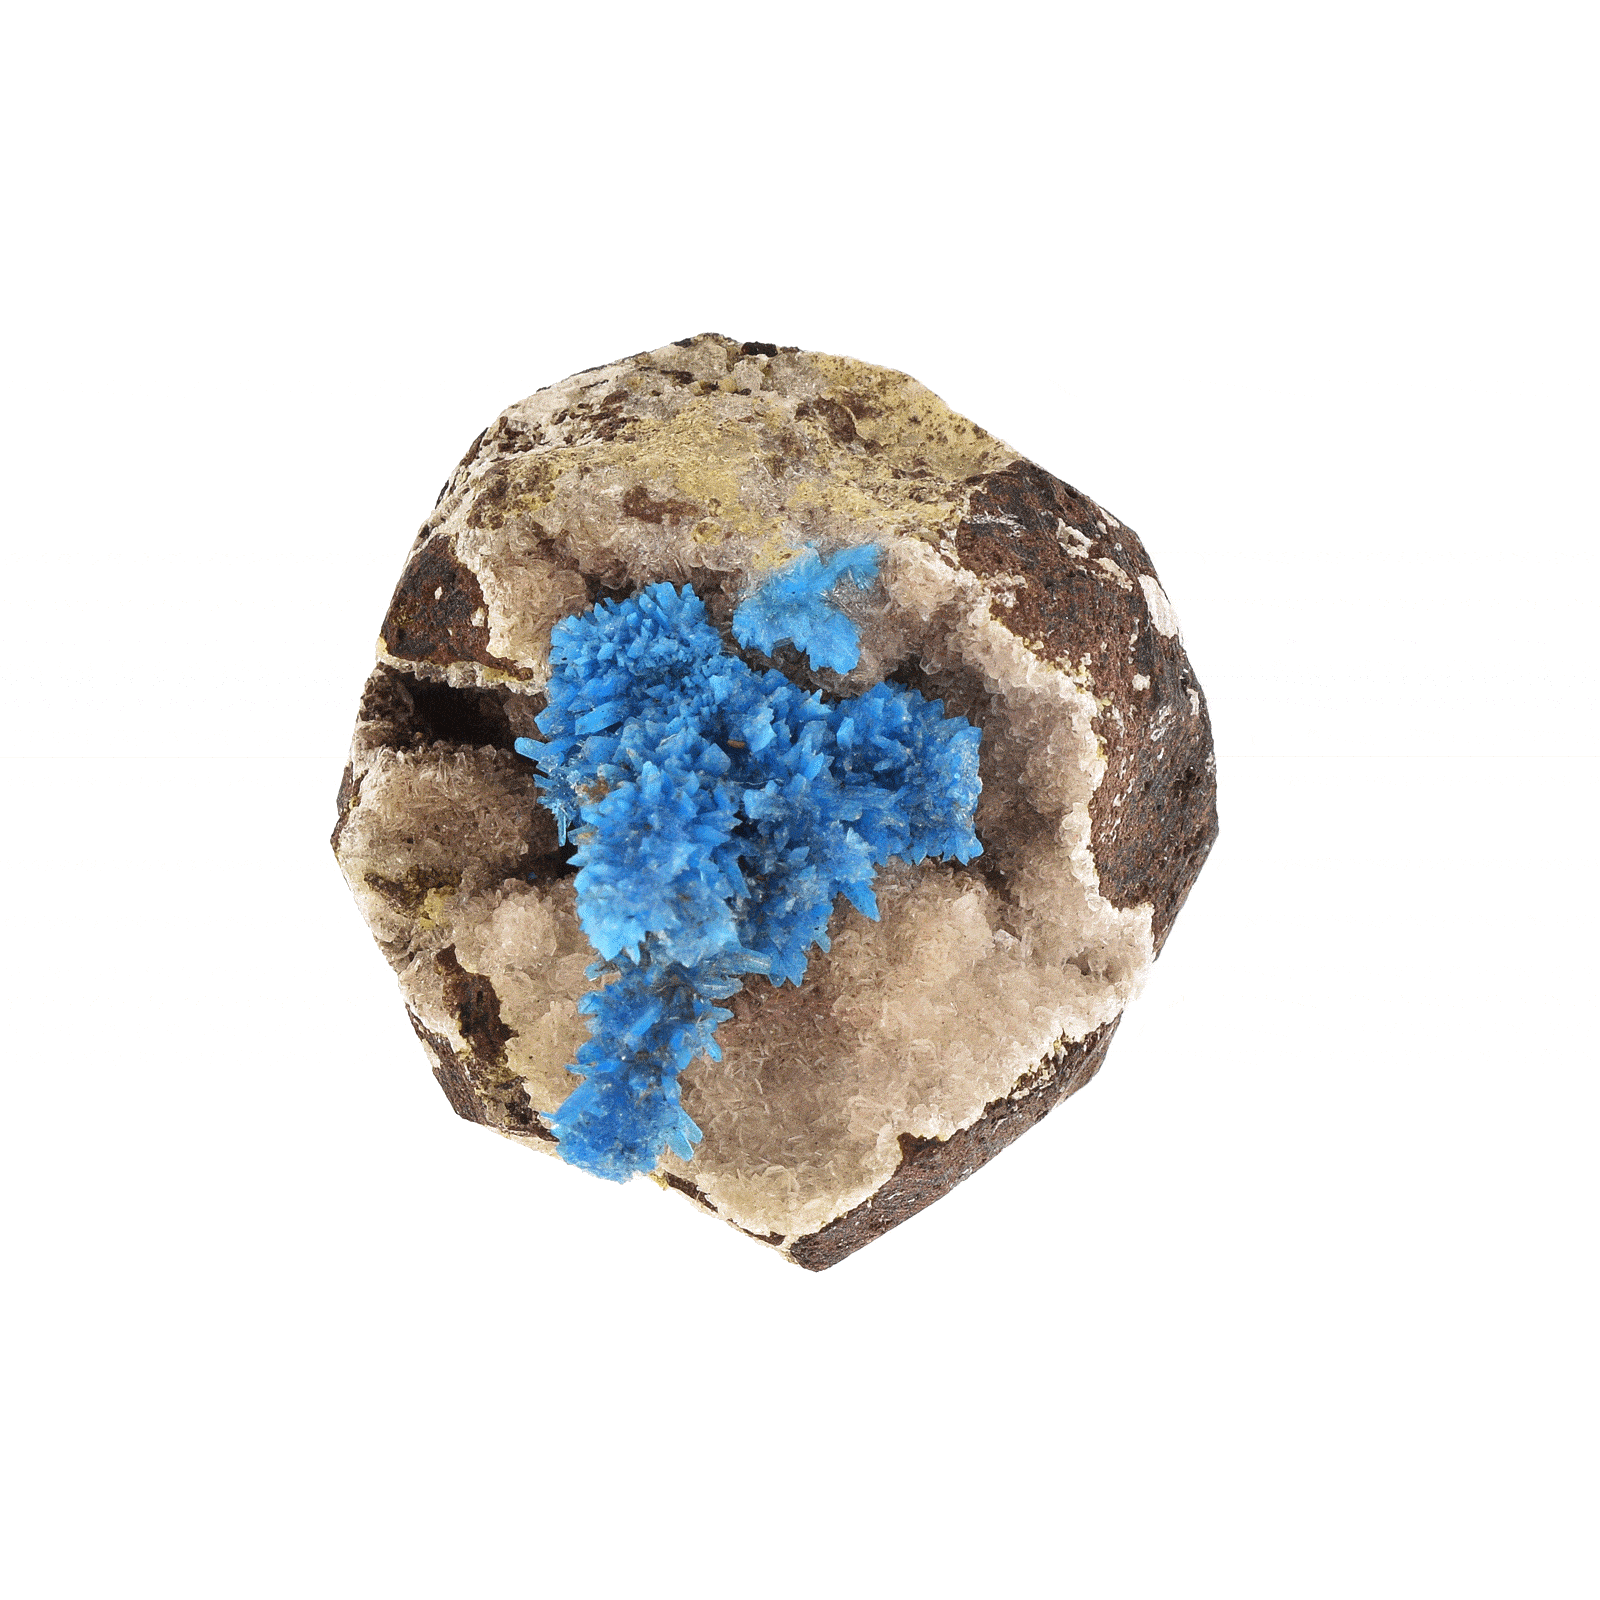 Ακατέργαστο φυσικό πέτρωμα Καβανσίτη σε βράχο, μεγέθους 3,5cm. Αγοράστε online shop.